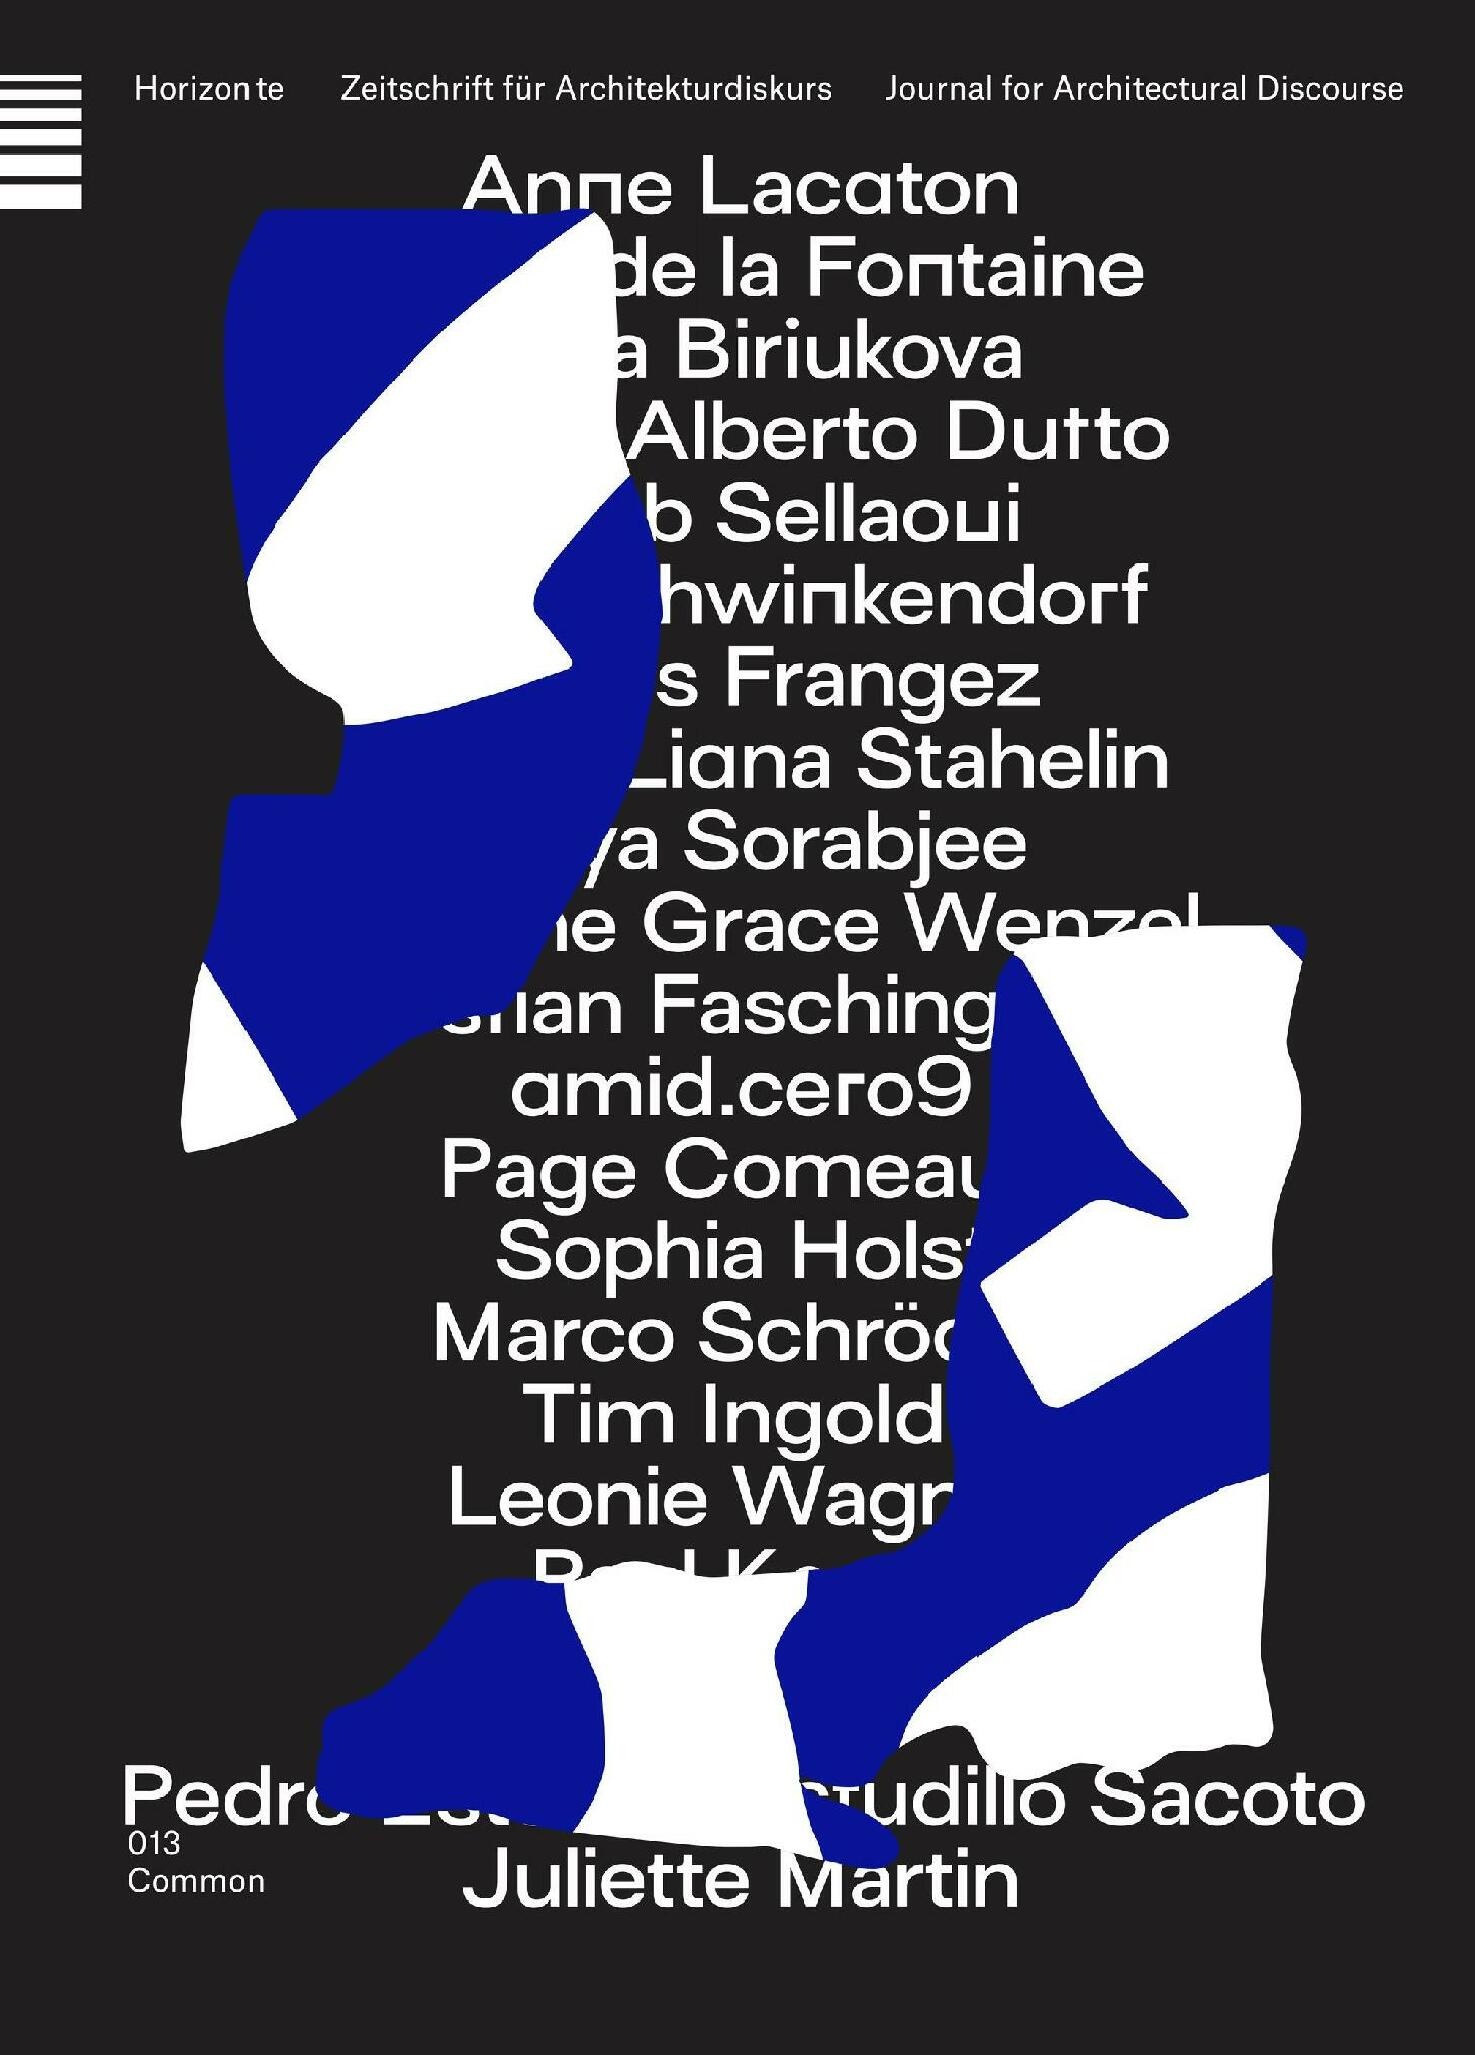 horizonte, Cover: HORIZONTE - Zeitschrift für Architekturdiskurs - Commonover, Bild: Antonia Dieti, Lina Gräf, Nora Keili, Jana Schwinkendorf